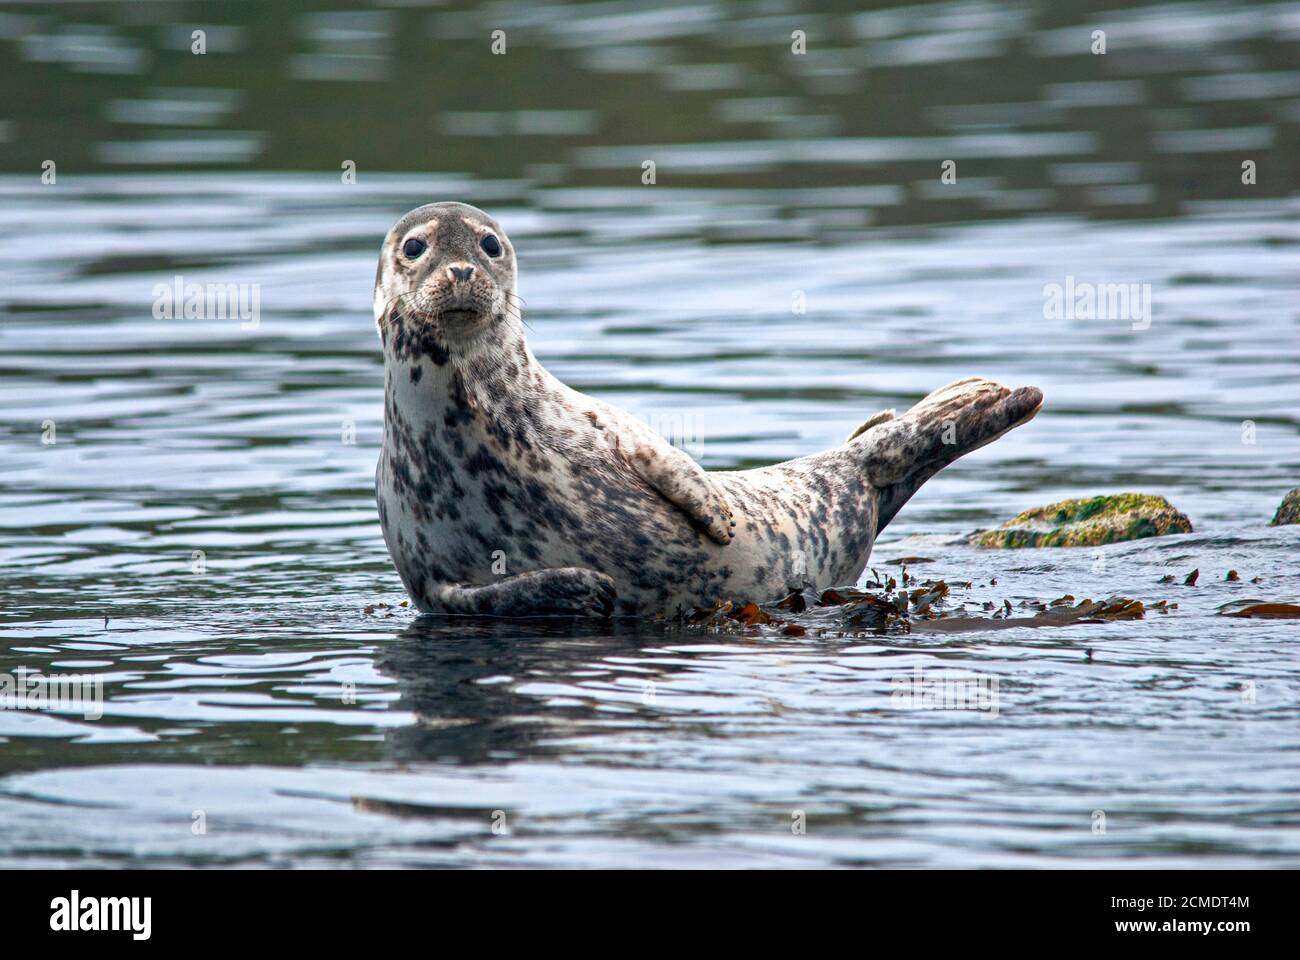 A curious common (harbour) seal raises its head. Shiant Islands, West Scotland Stock Photo